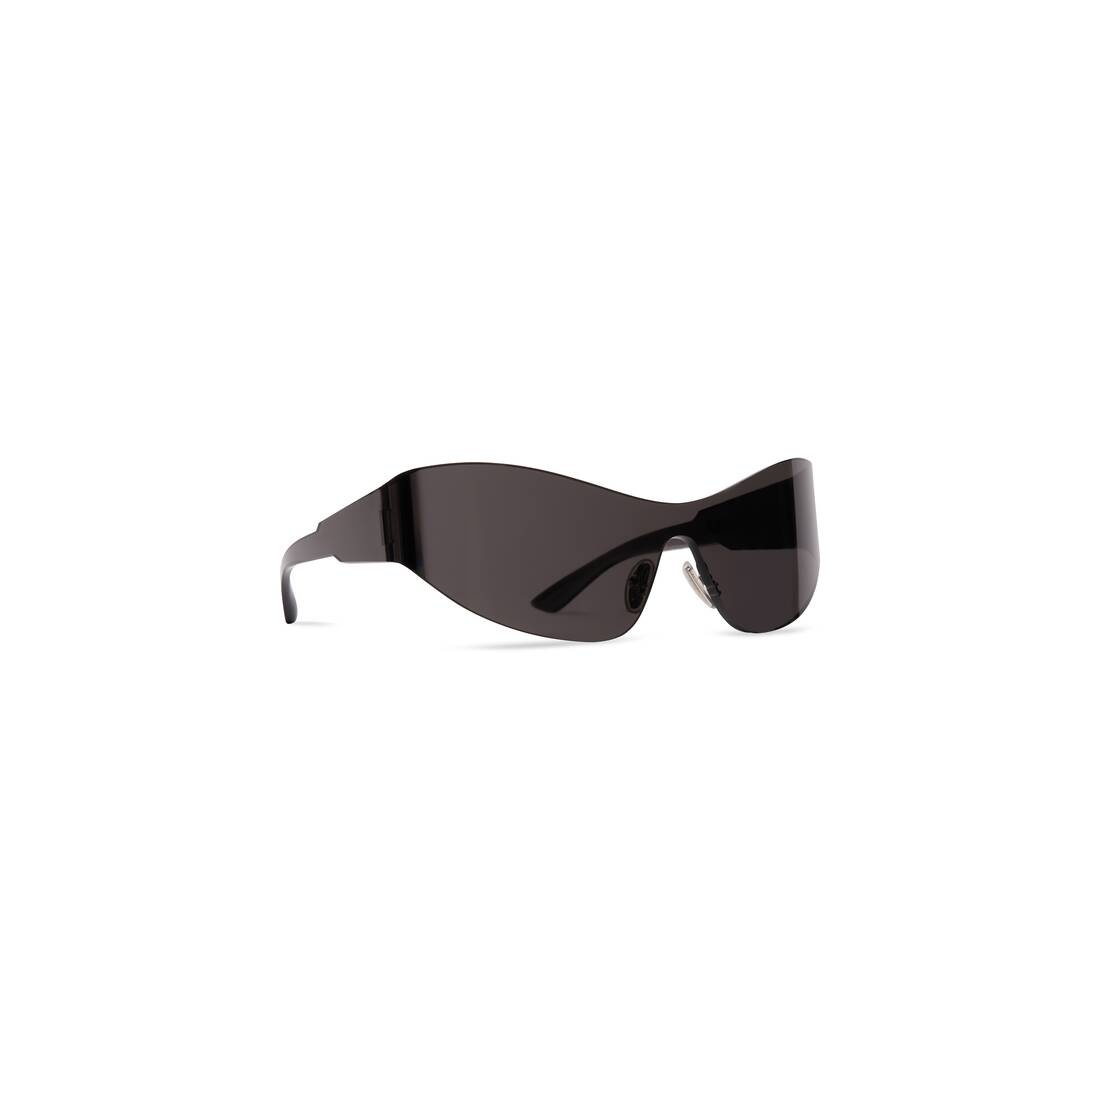 Mono Cat 2.0 Sunglasses in Black - 2